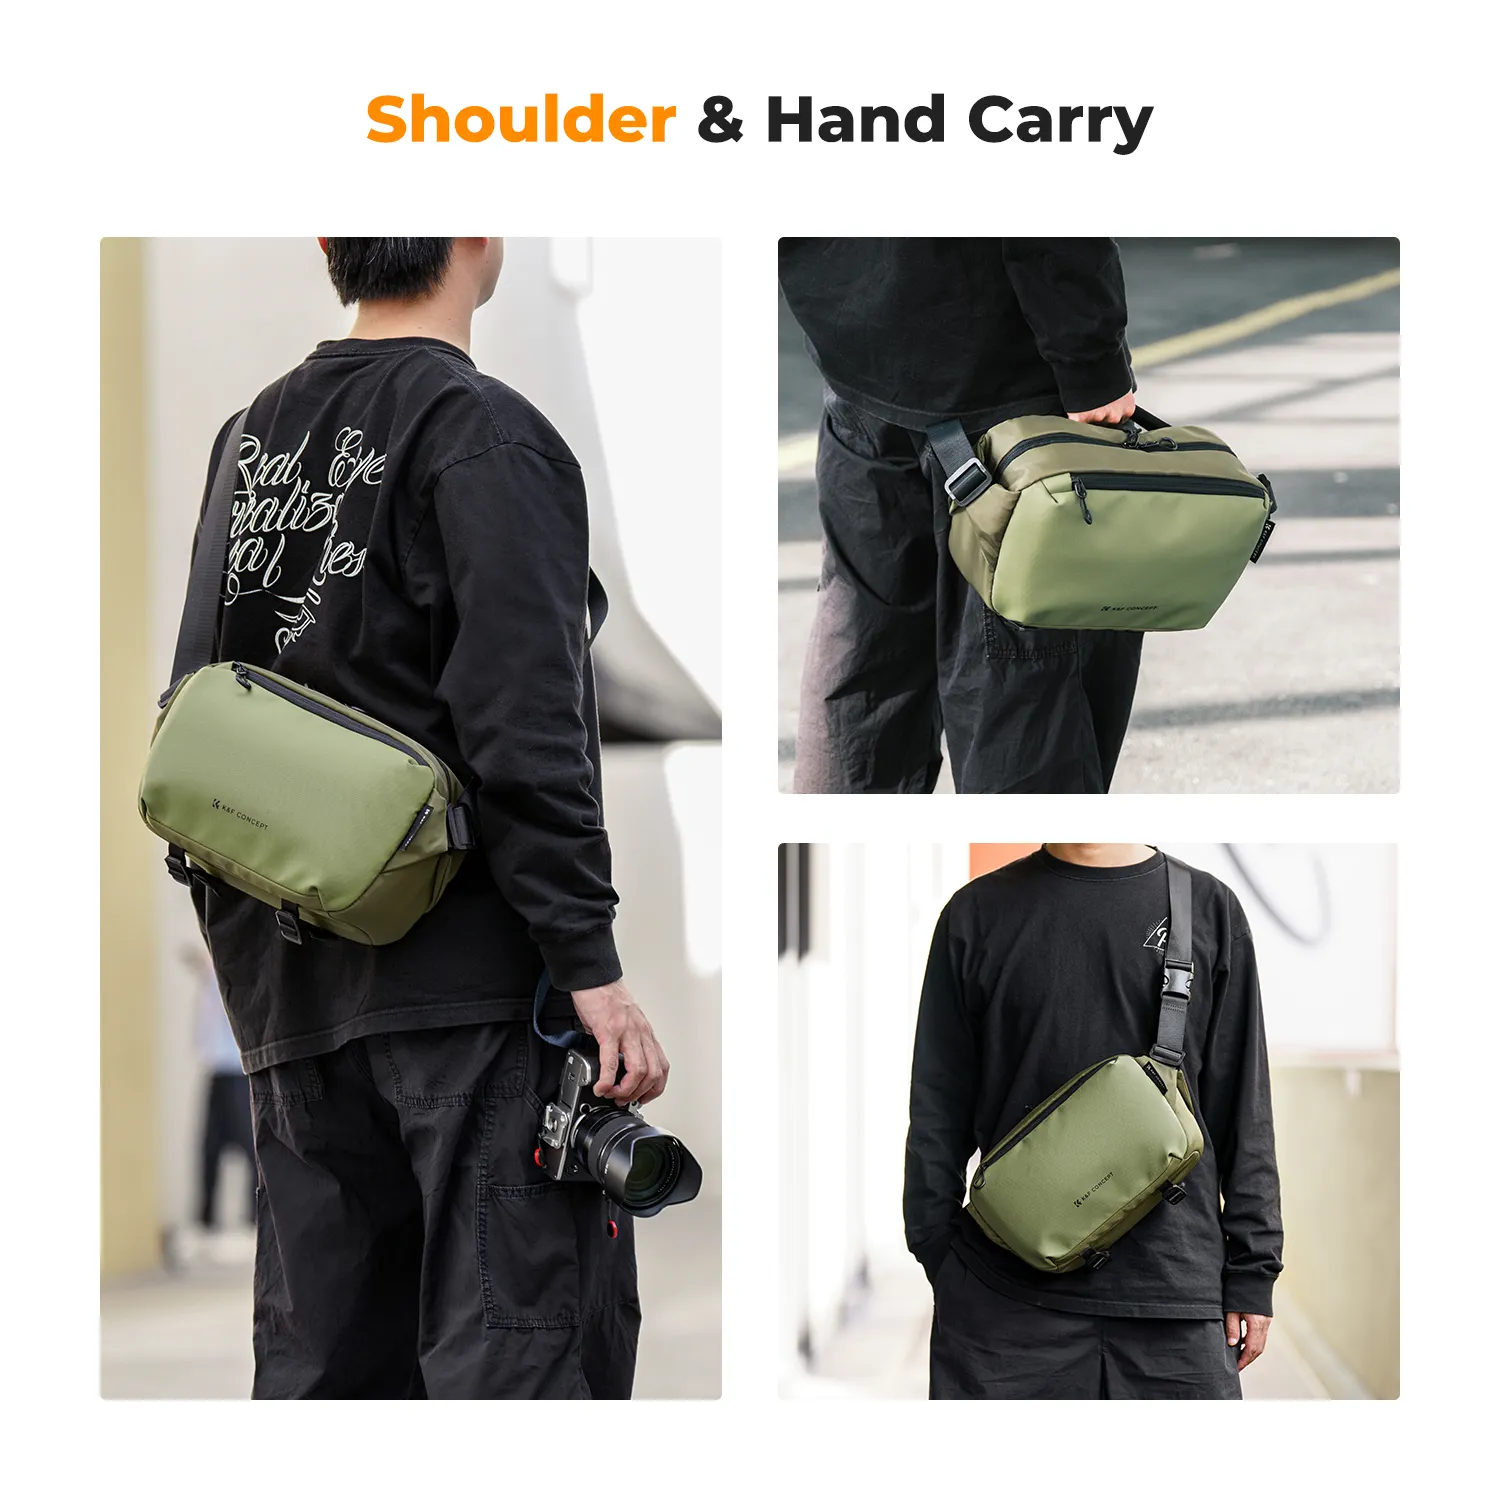 Túi đeo chéo K&F Concept Sling Bag 10L - KF13.157 (Dark Green)